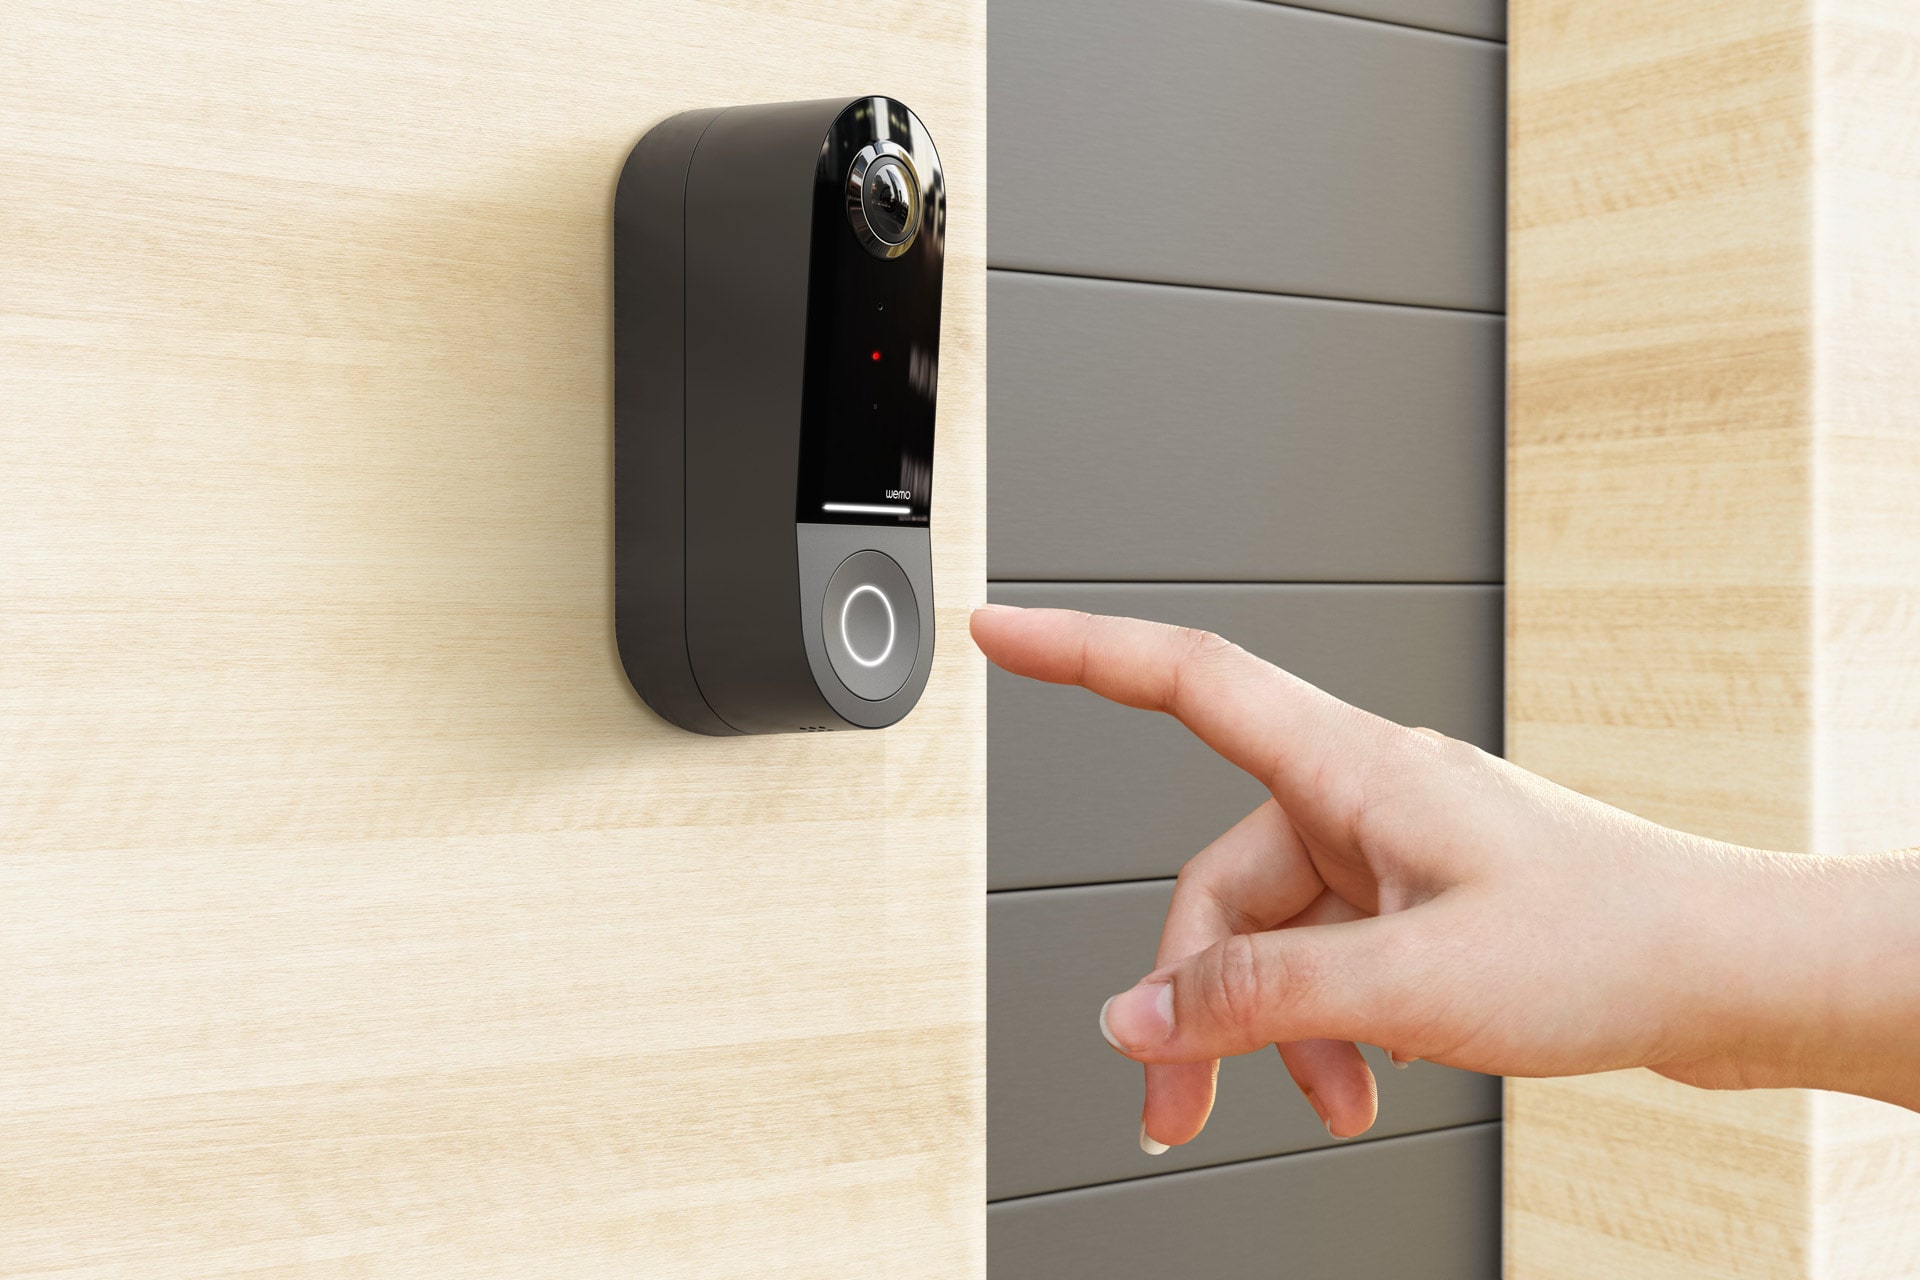 Smarte Video Türklingel von Belkin namens "Wemo Smart Video Doorbell" verwendet HomeKit Secure Video um Privatsphäre der Benutzer zu garantieren